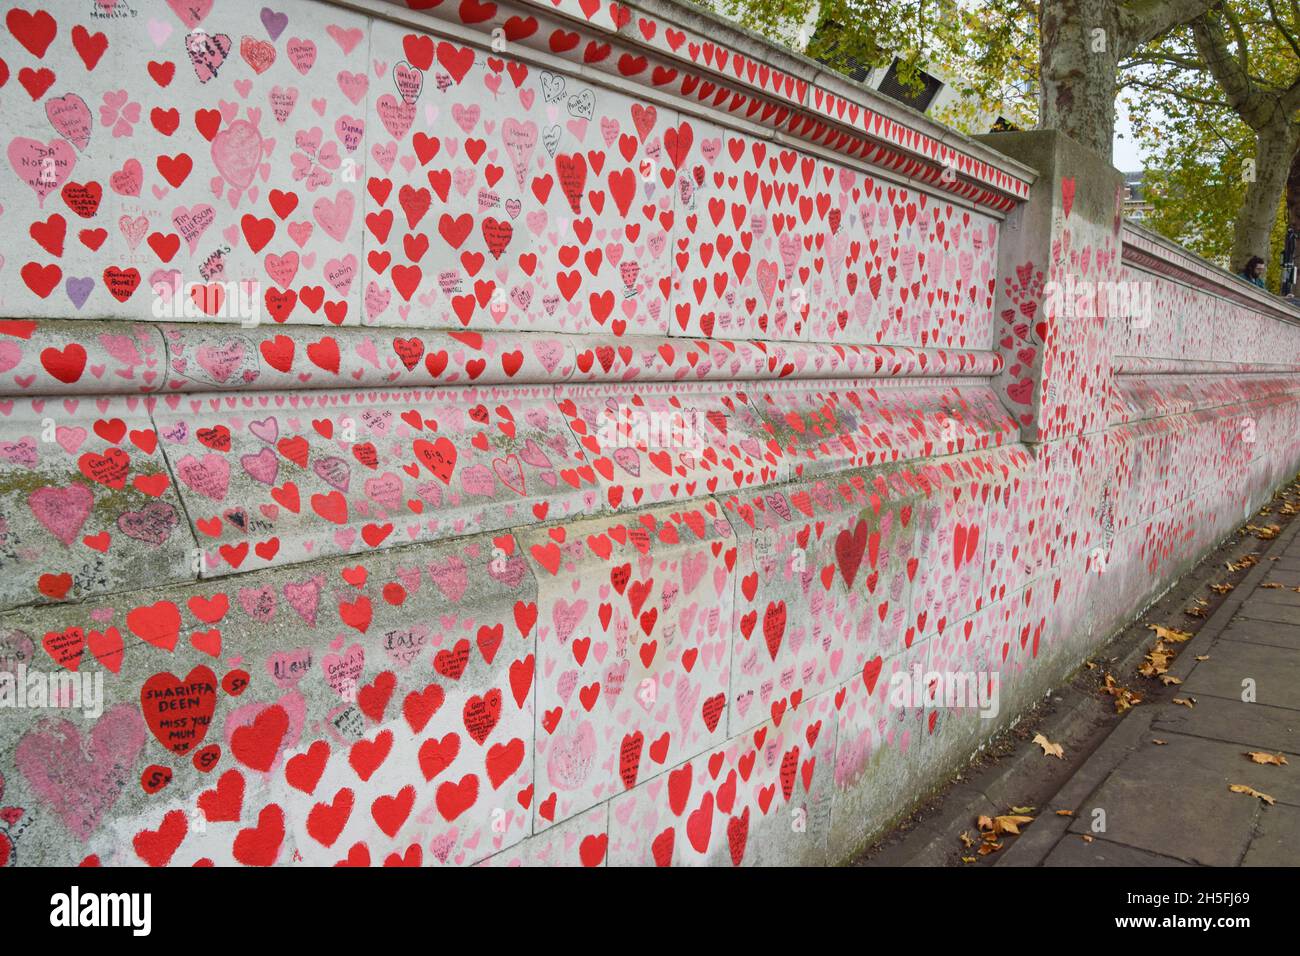 Londra, Regno Unito. 9 novembre 2021. Il National Covid Memorial Wall all'esterno del St Thomas' Hospital. Oltre 150,000 cuori rossi sono stati dipinti da volontari e membri del pubblico, uno per ogni vita persa a Covid nel Regno Unito fino ad oggi. Foto Stock